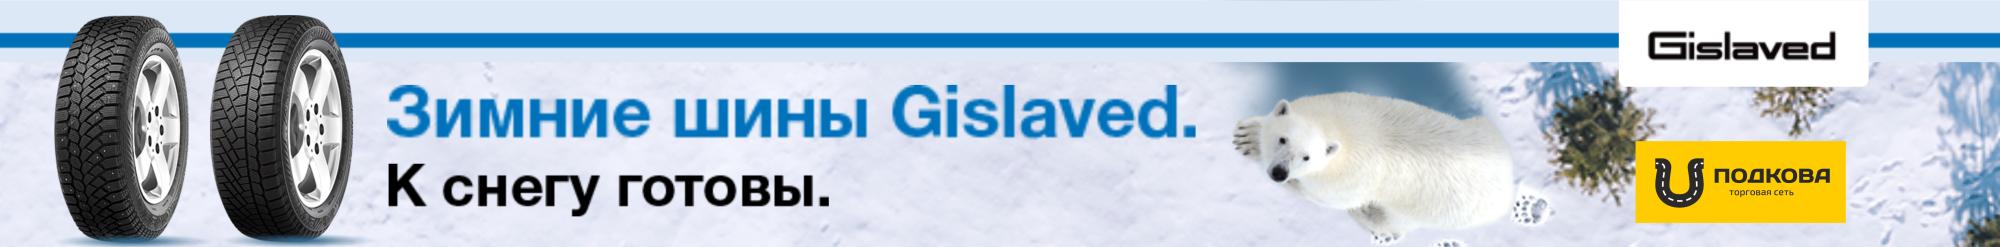 Gislaved  - надежные скандинавские шины 